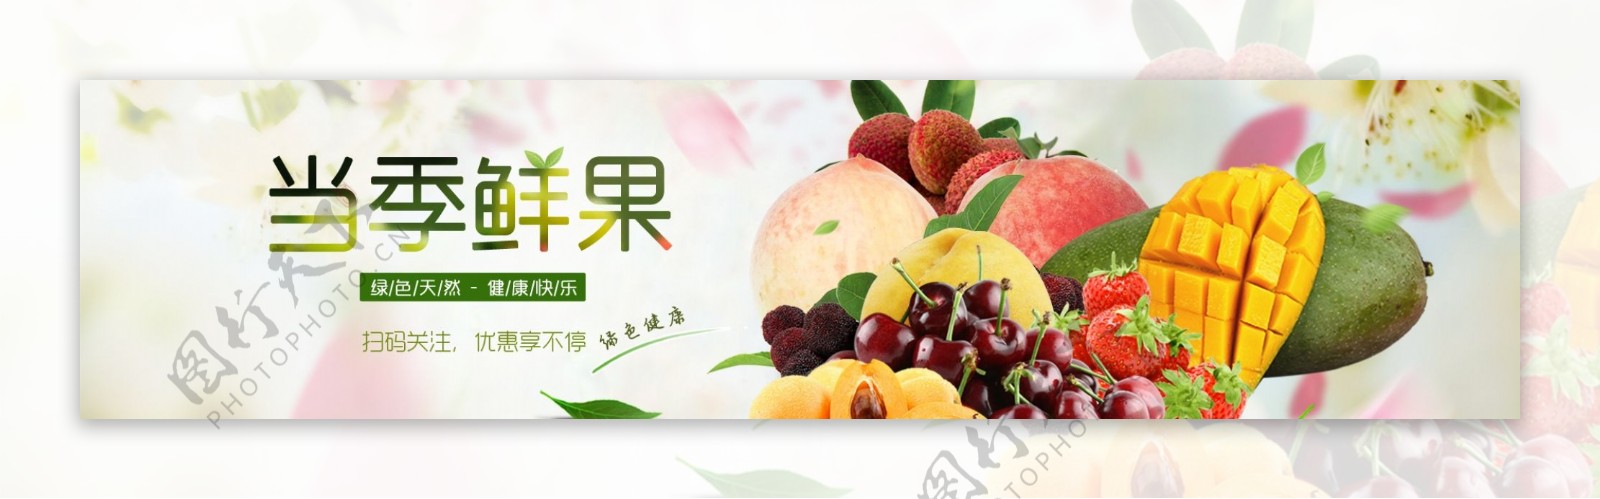 水果果蔬网站banner